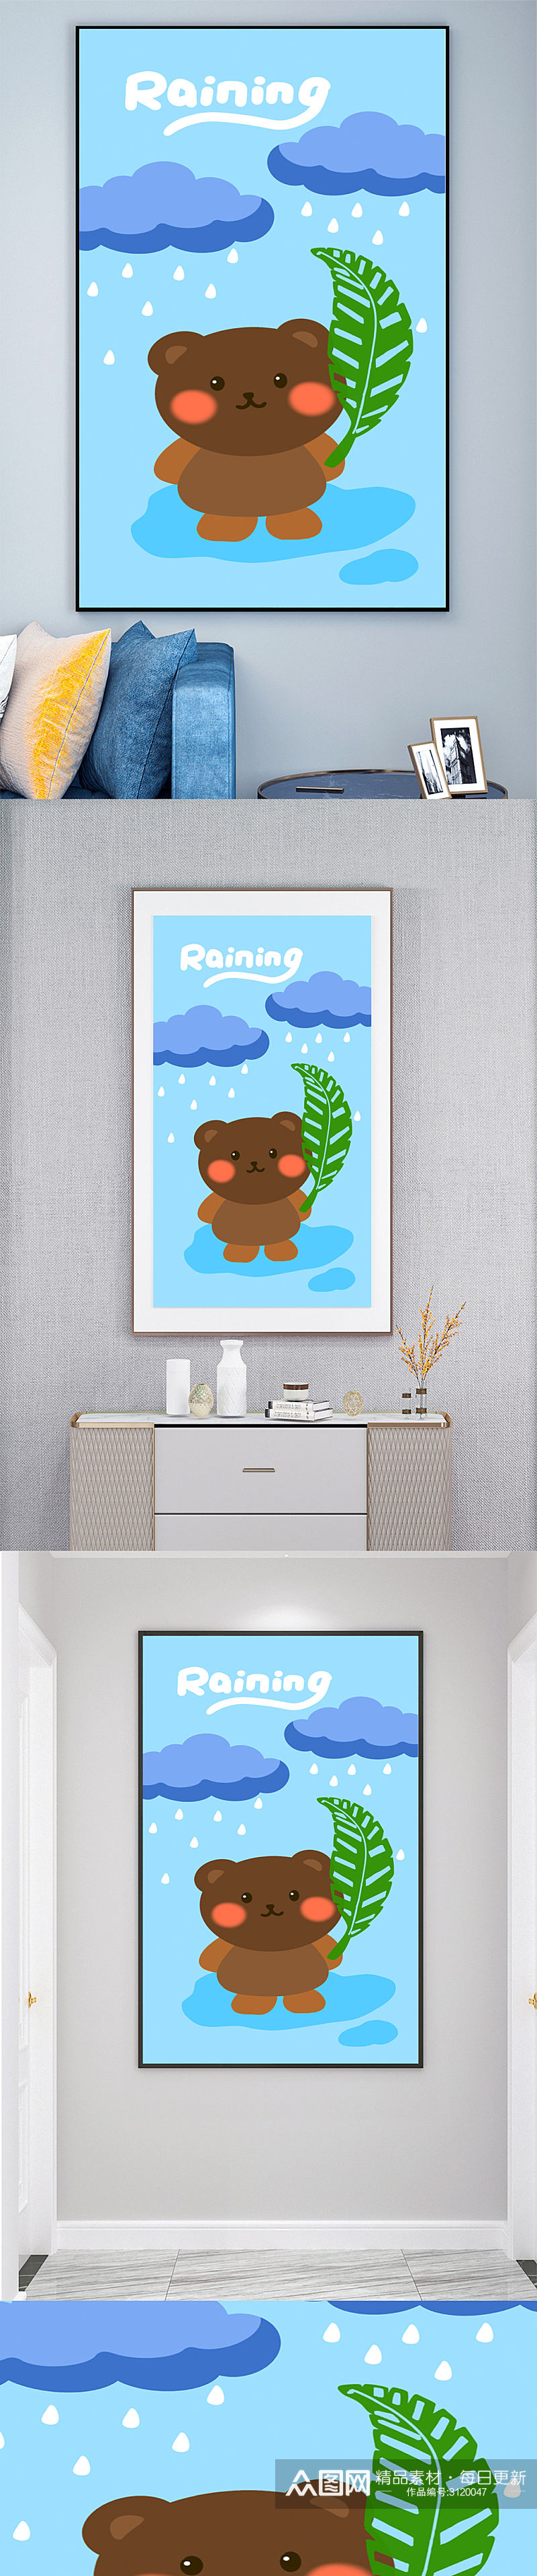 卡通熊动物装饰画壁画素材